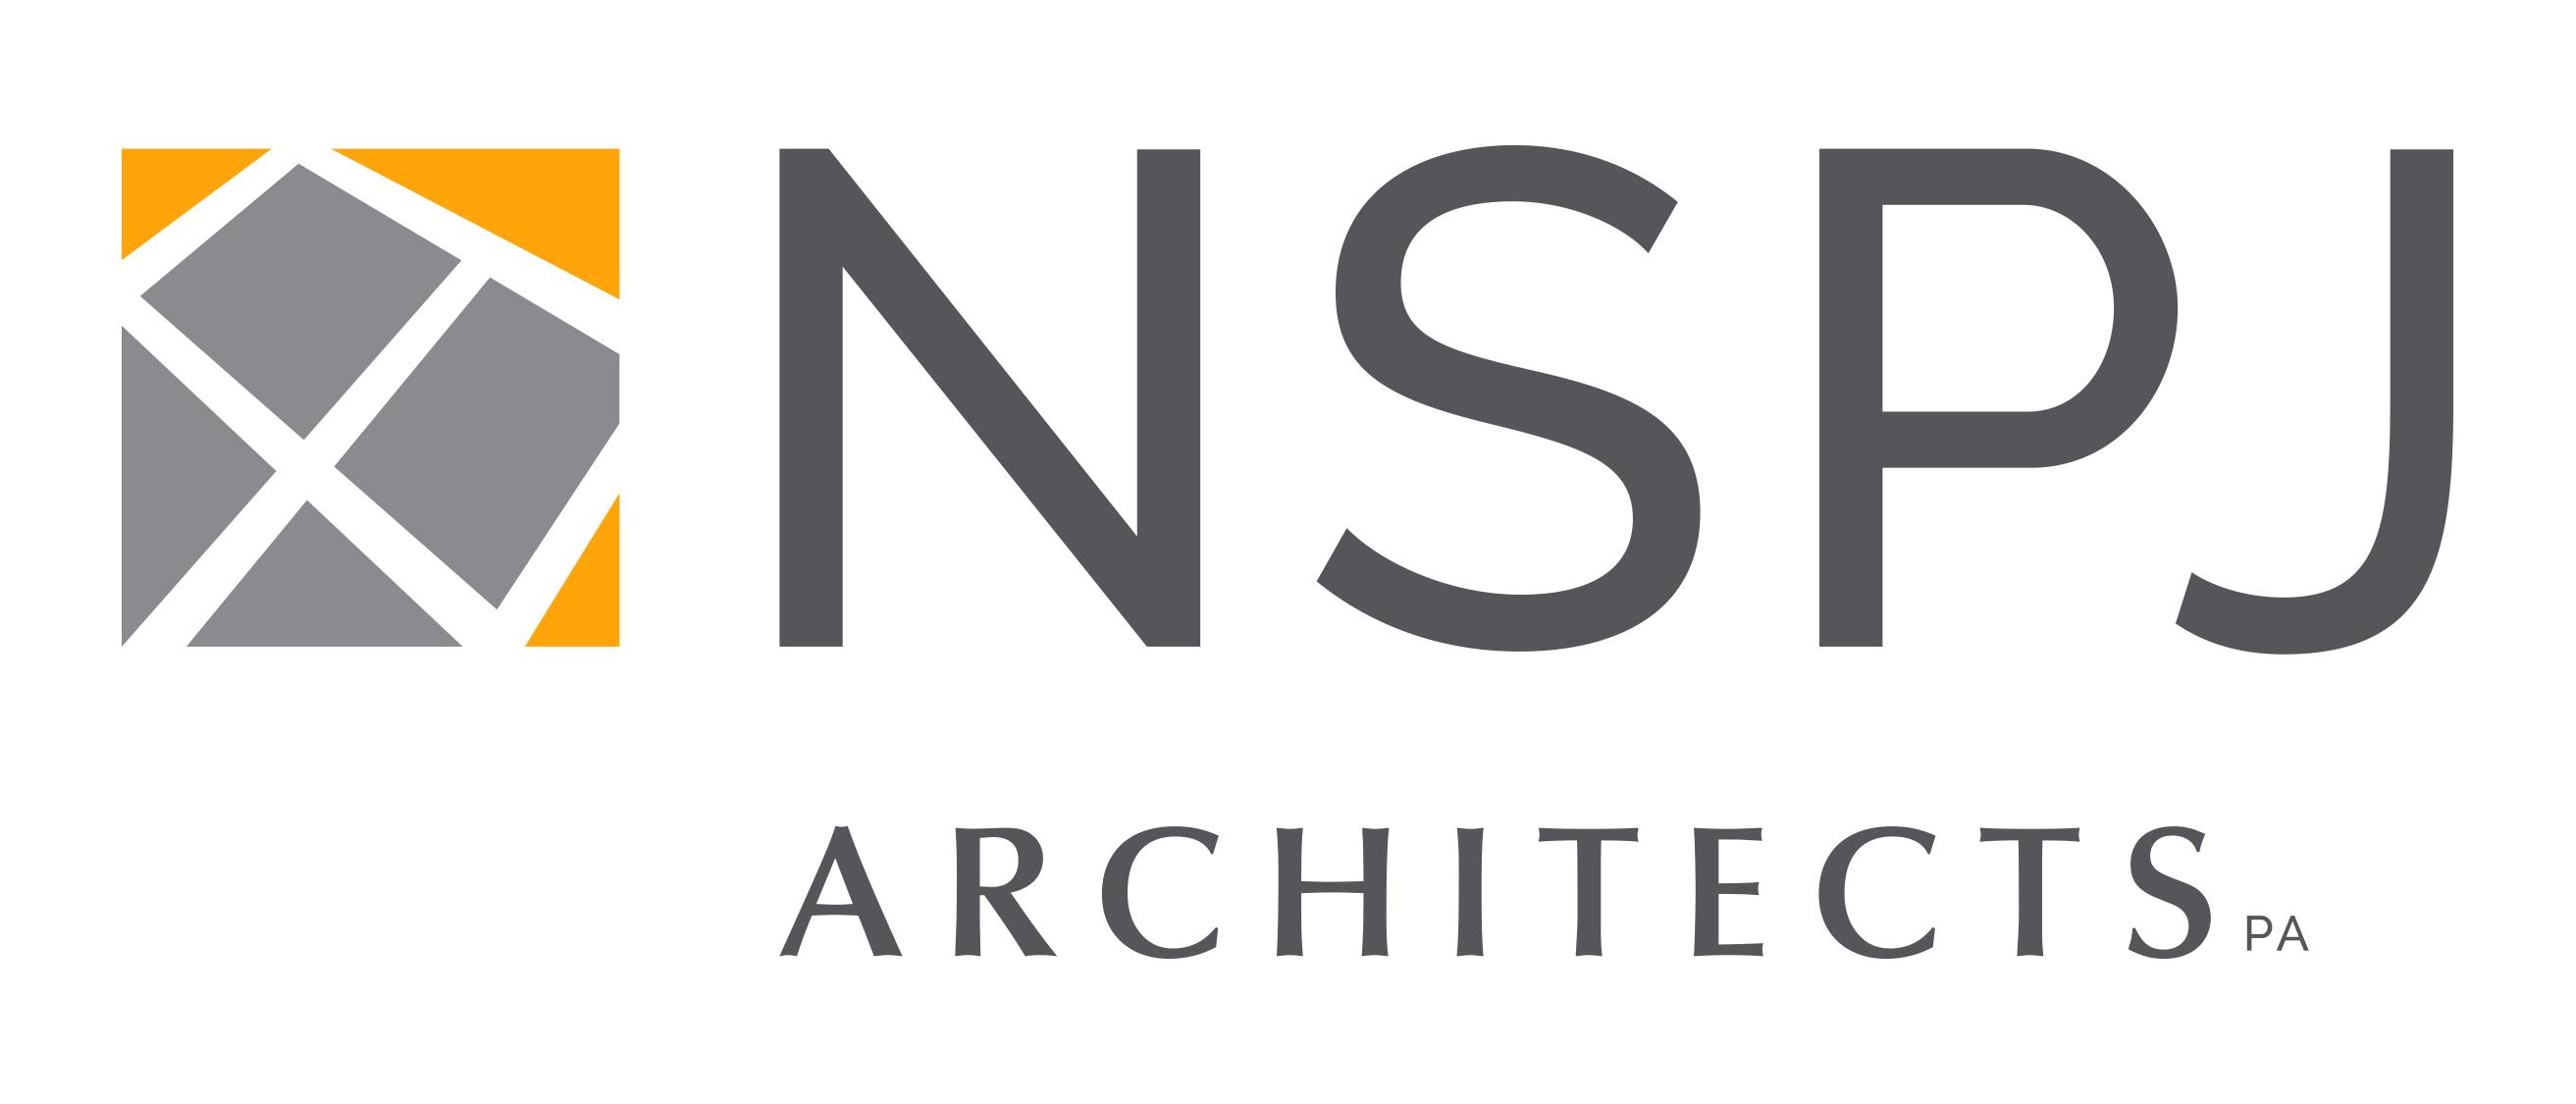 NSPJ Architects